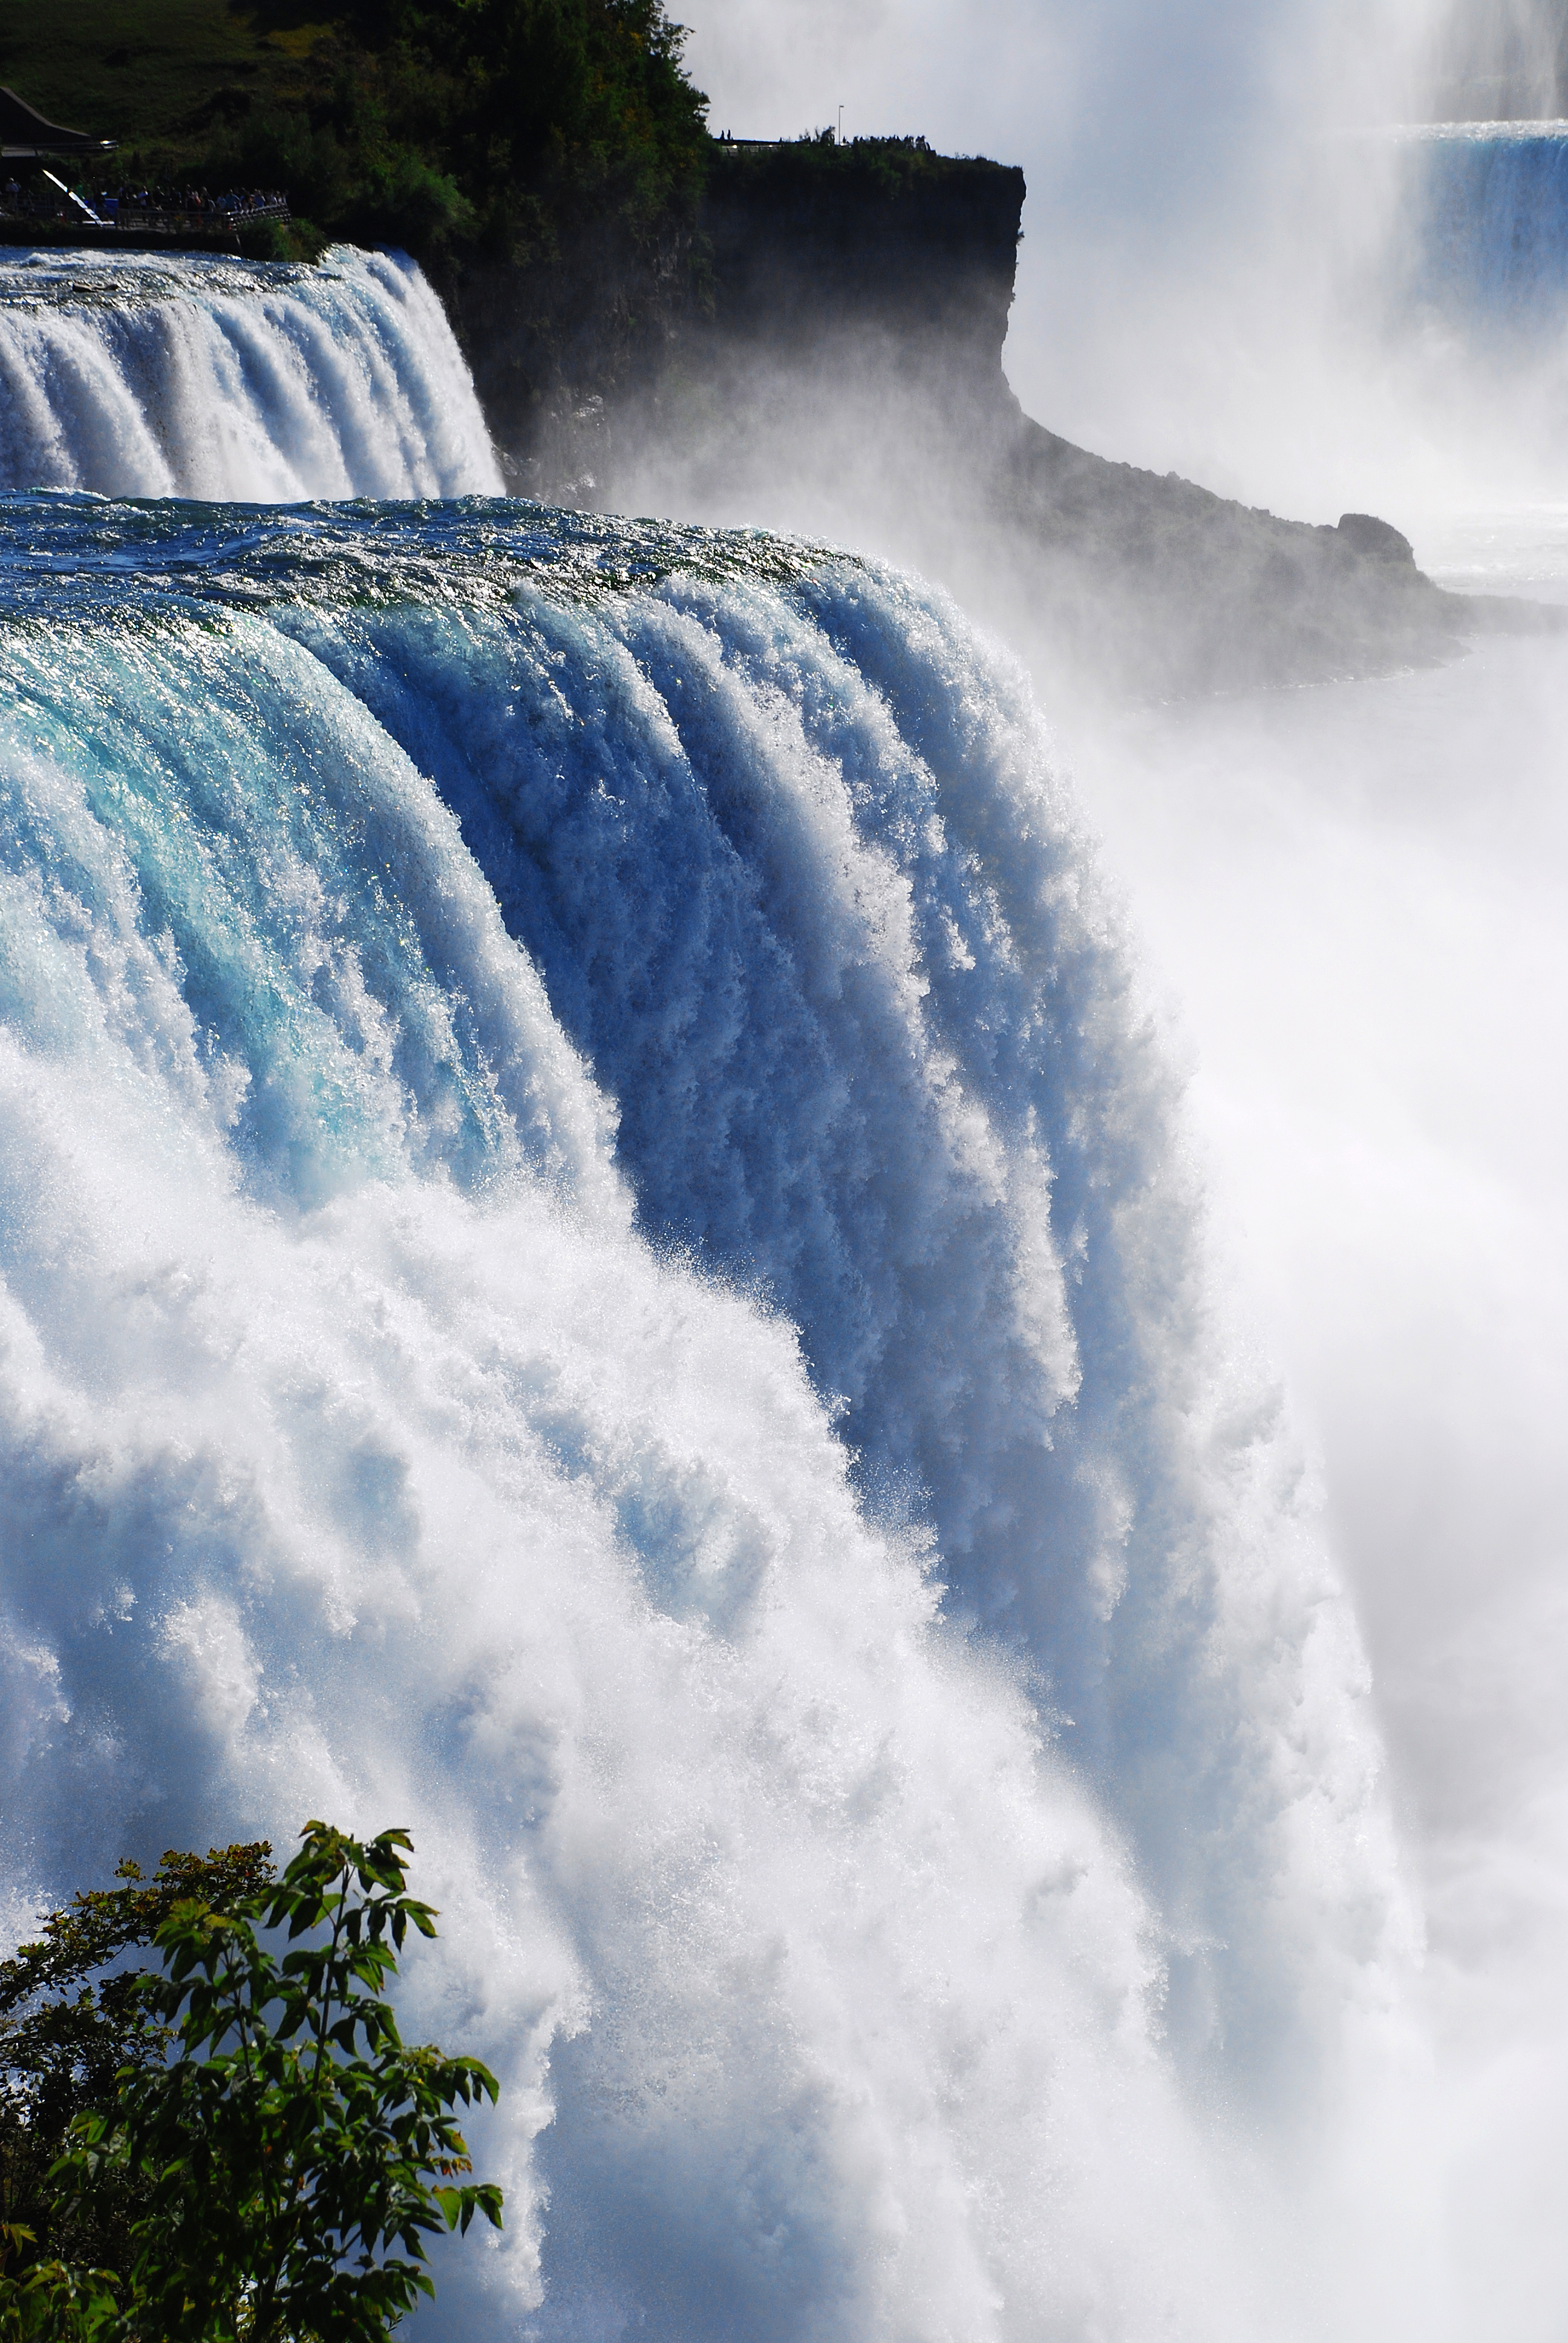 Itinerario de viaje a medida por Estados Unidos y Canadá, cataratas del Niagara